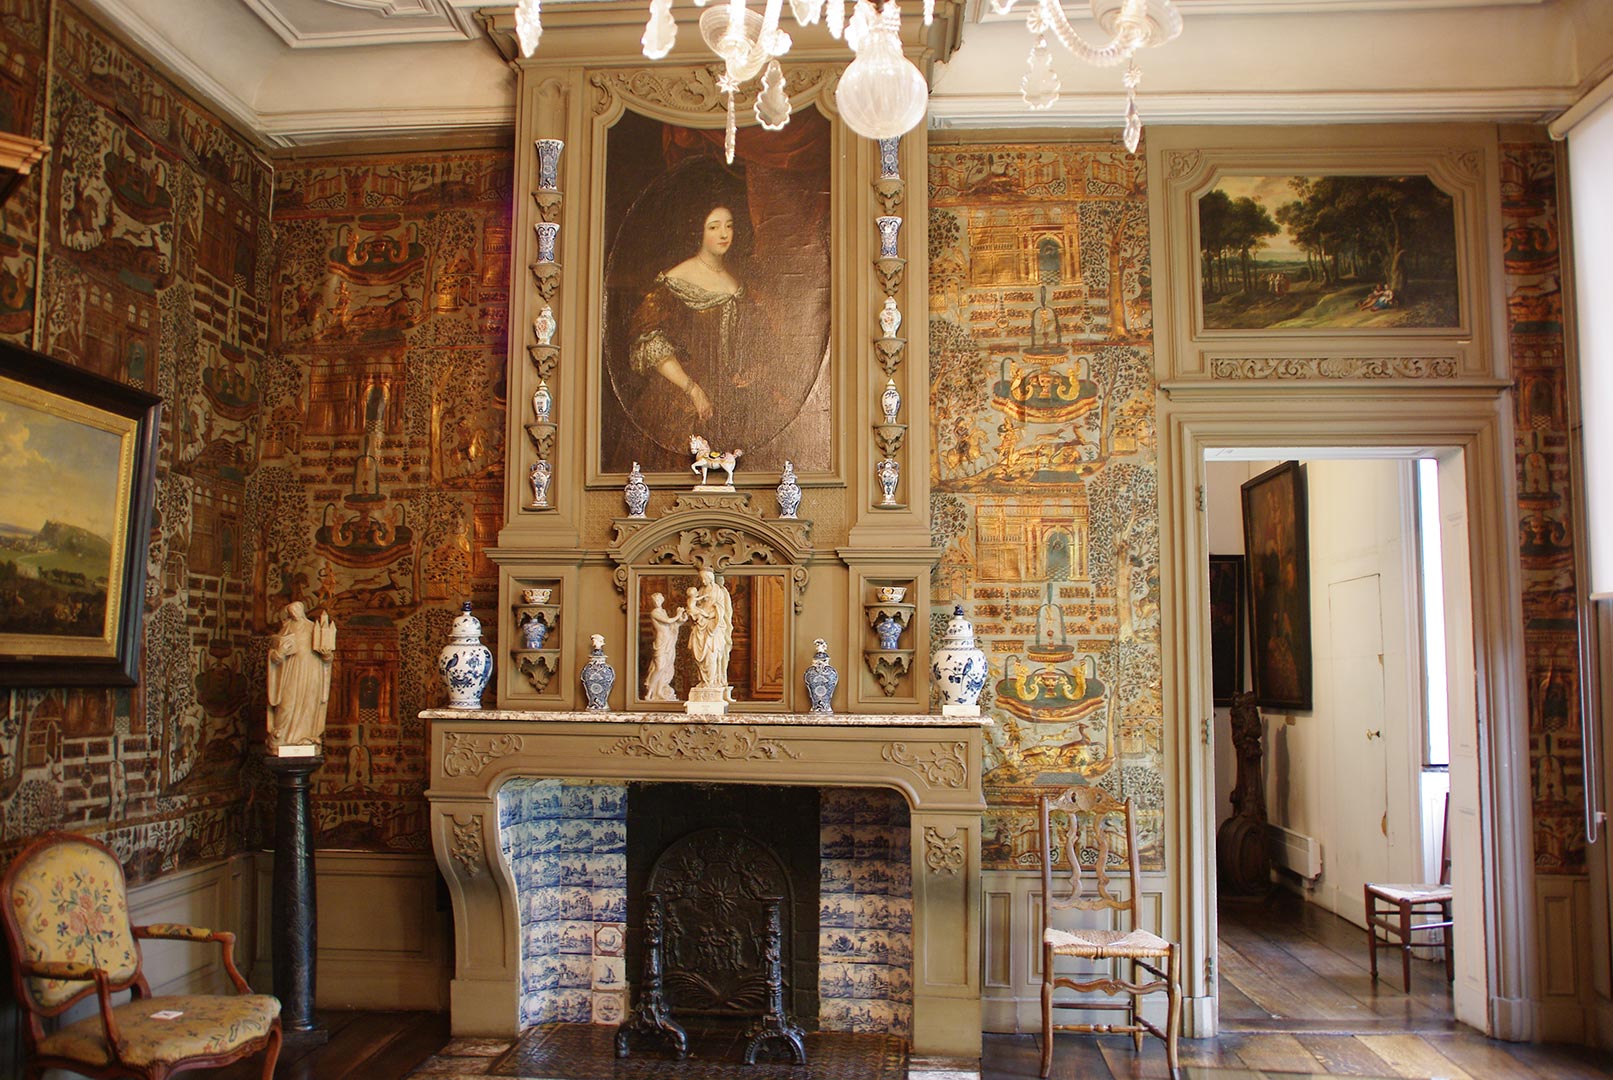 Cette salle a les murs recouverts de cuirs gaufrés et dorés réalisés dans nos régions vers 1700. La cheminée, dans le style de Daniel Marot, est décorée de potiches en Delft.